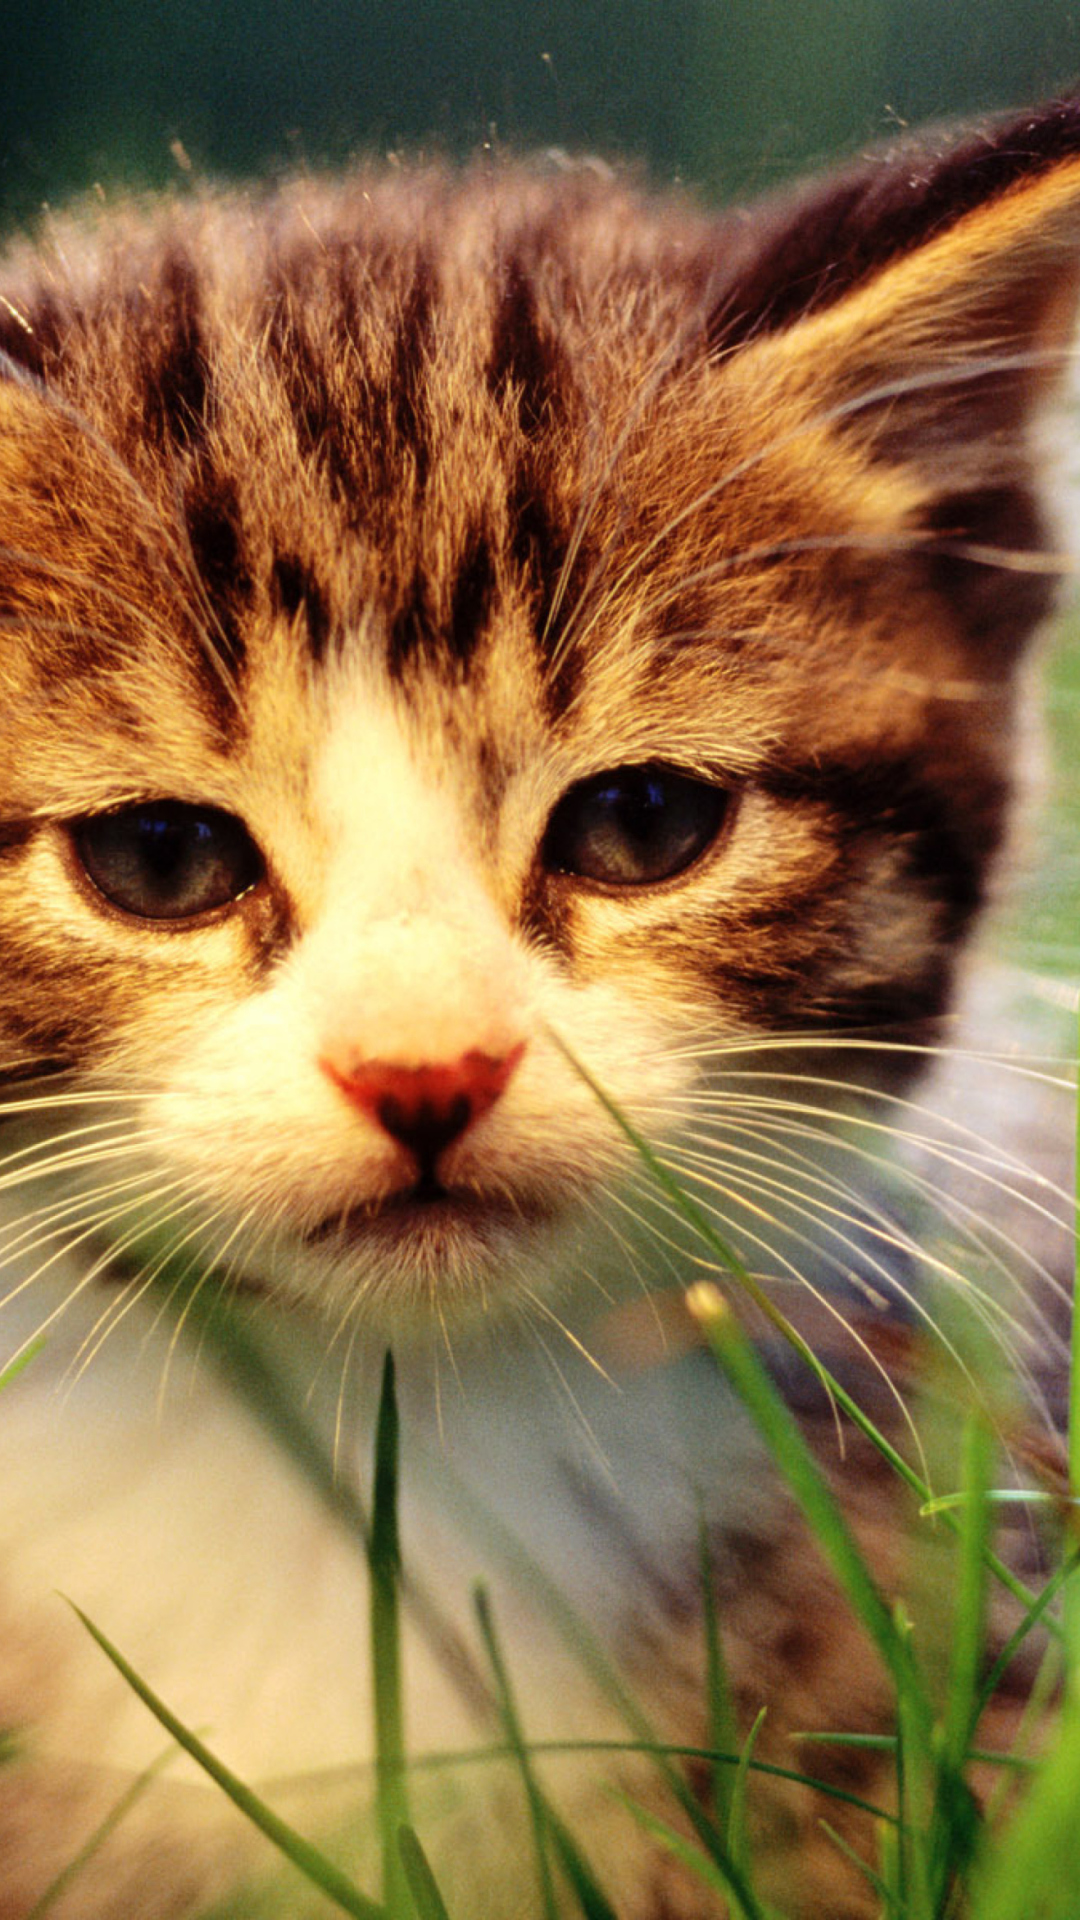 Kitten In Grass wallpaper 1080x1920